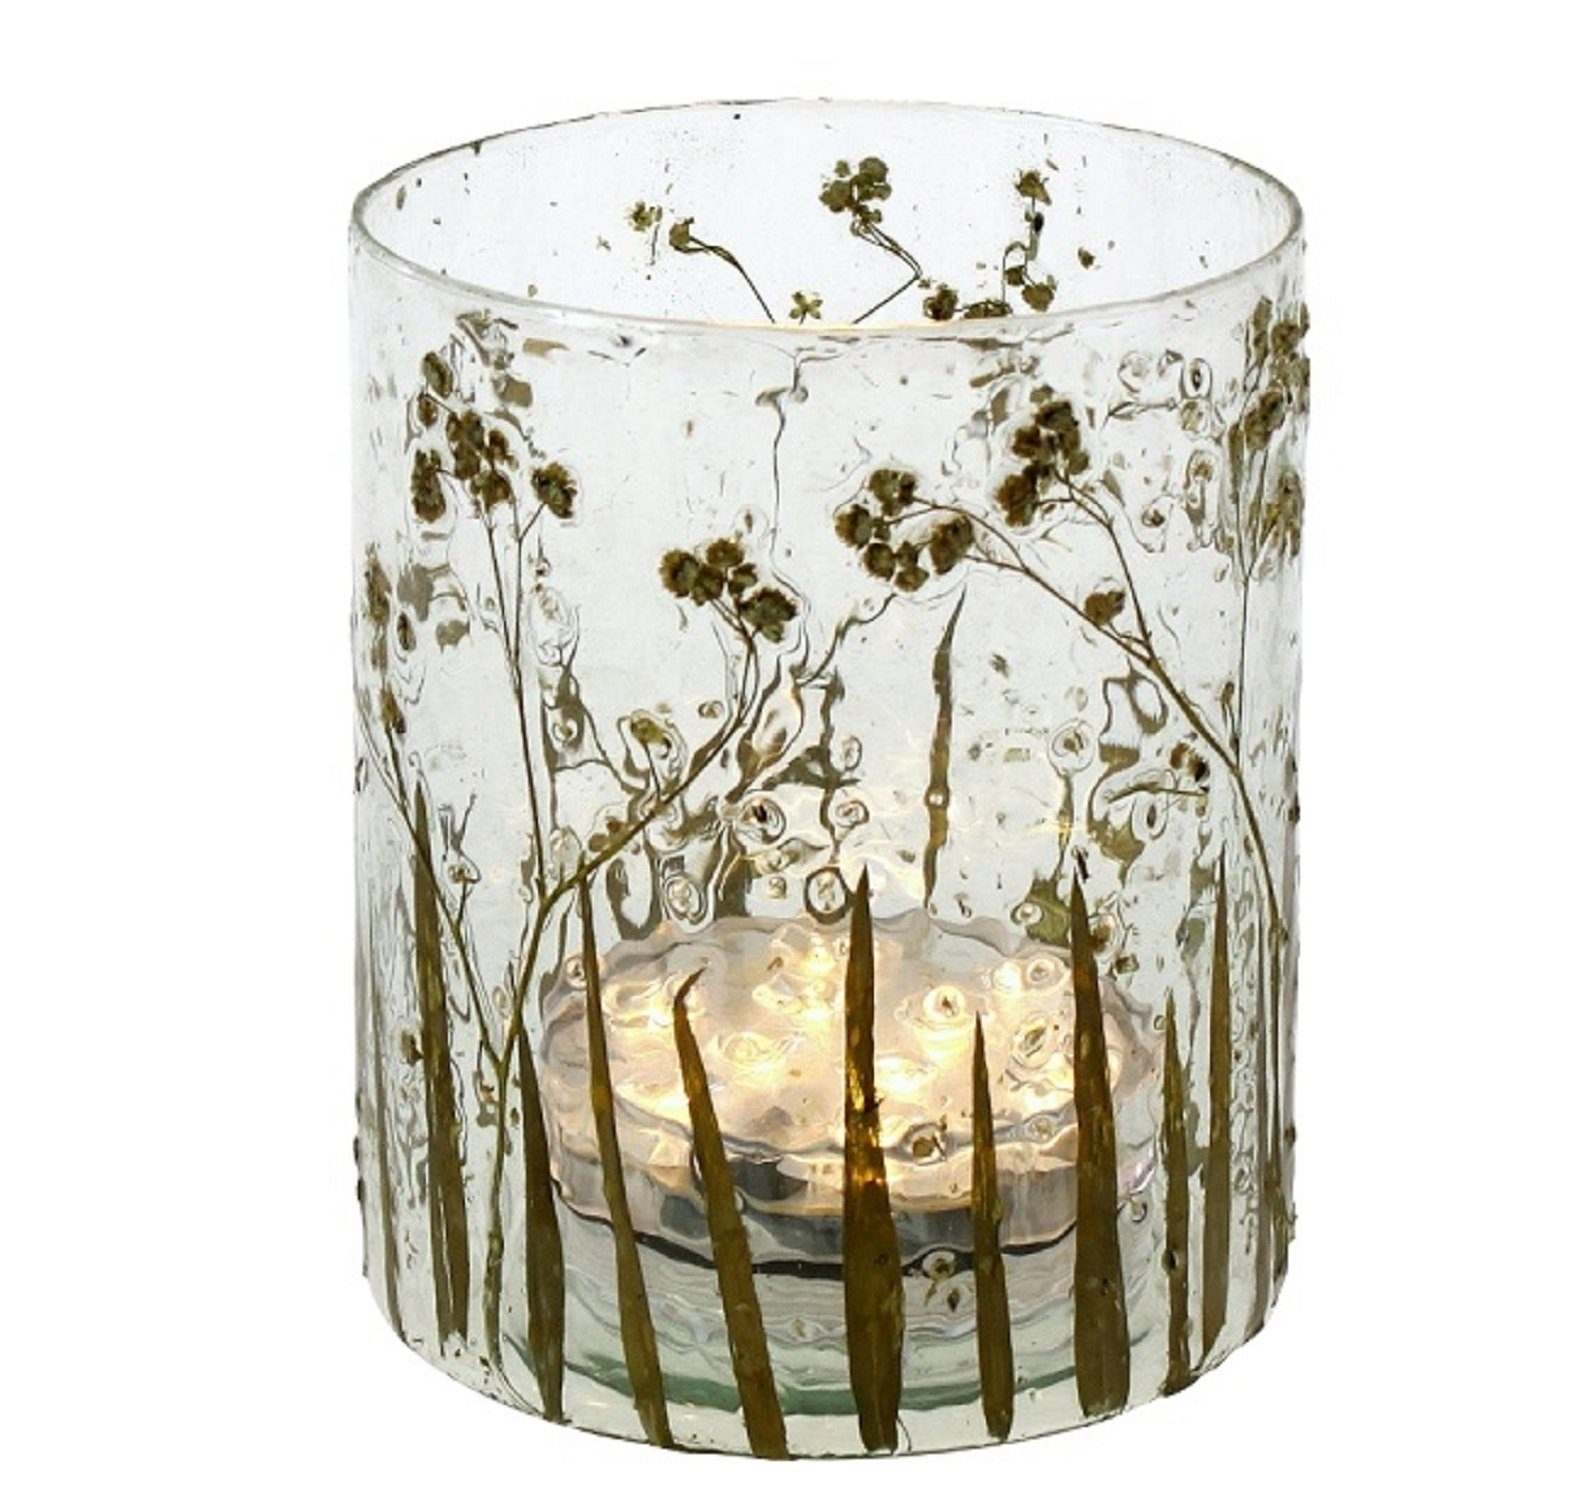  BigDean 4er Set Teelichtgläser in 4 verschiedenen Motiven - Grün  lackierte Windlicht-Gläser - Kerzenglas - schöne Tischdekoration